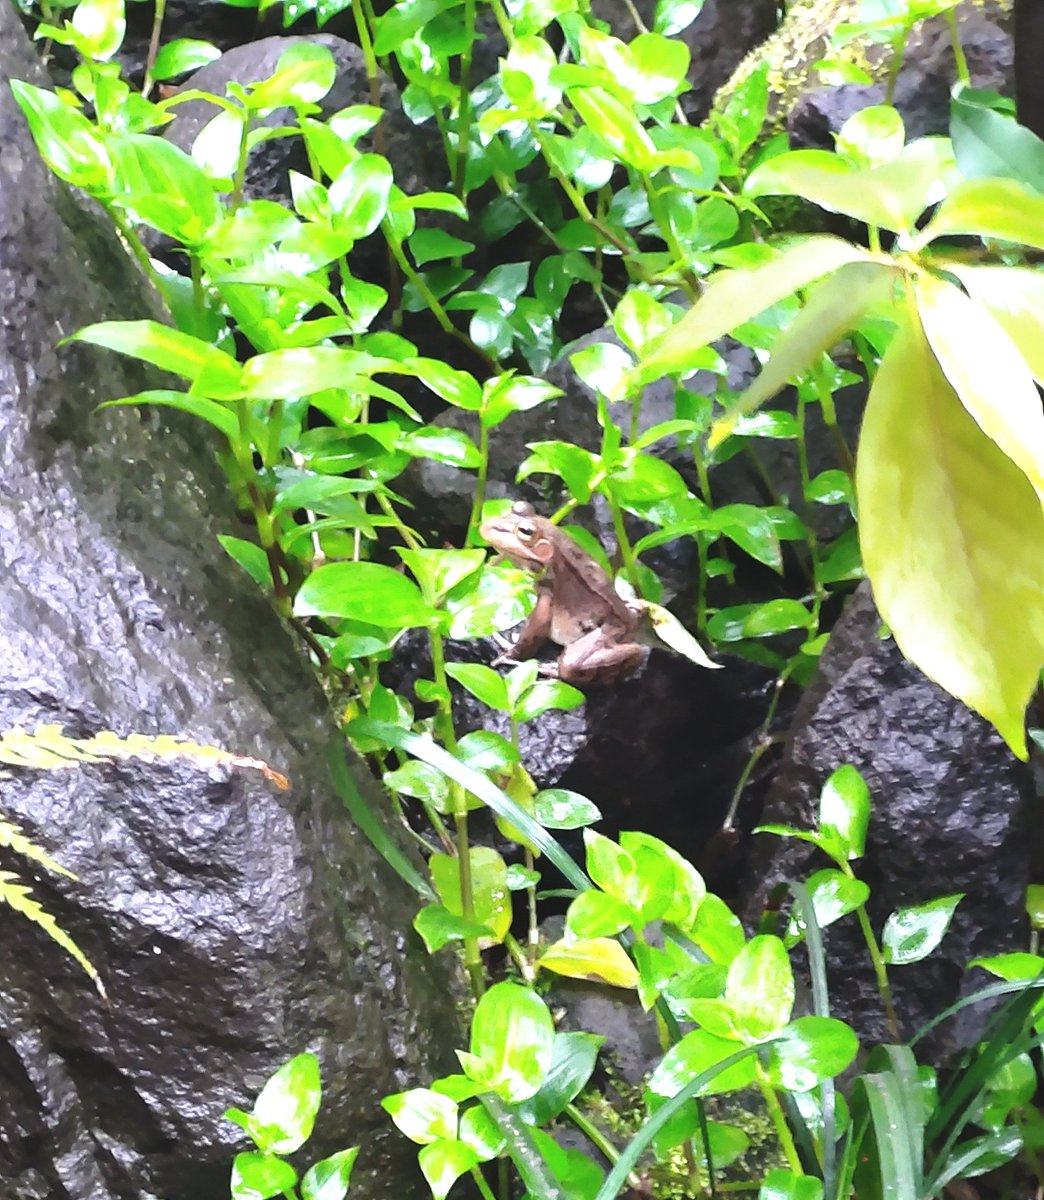 念願の河津の!KawaZooに!行けたのです!カエルいっぱいだし中庭の水田でカエル眺めるのも幸せよ…すごいカエル探しし続けた。パラダイスかここは 